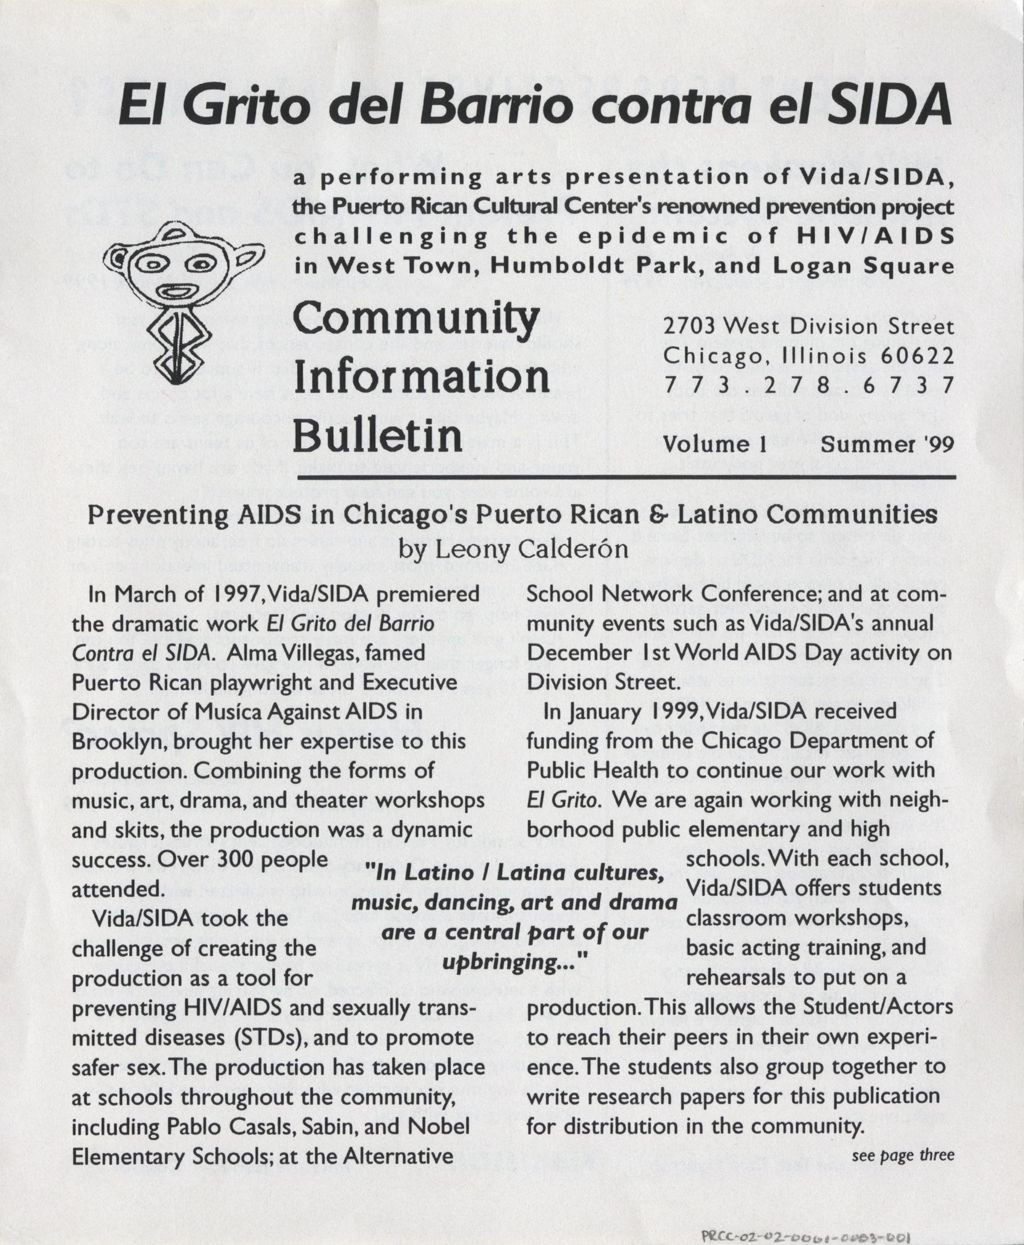 Miniature of El Grito del Barrio contra el SIDA: Community Information Bulletin